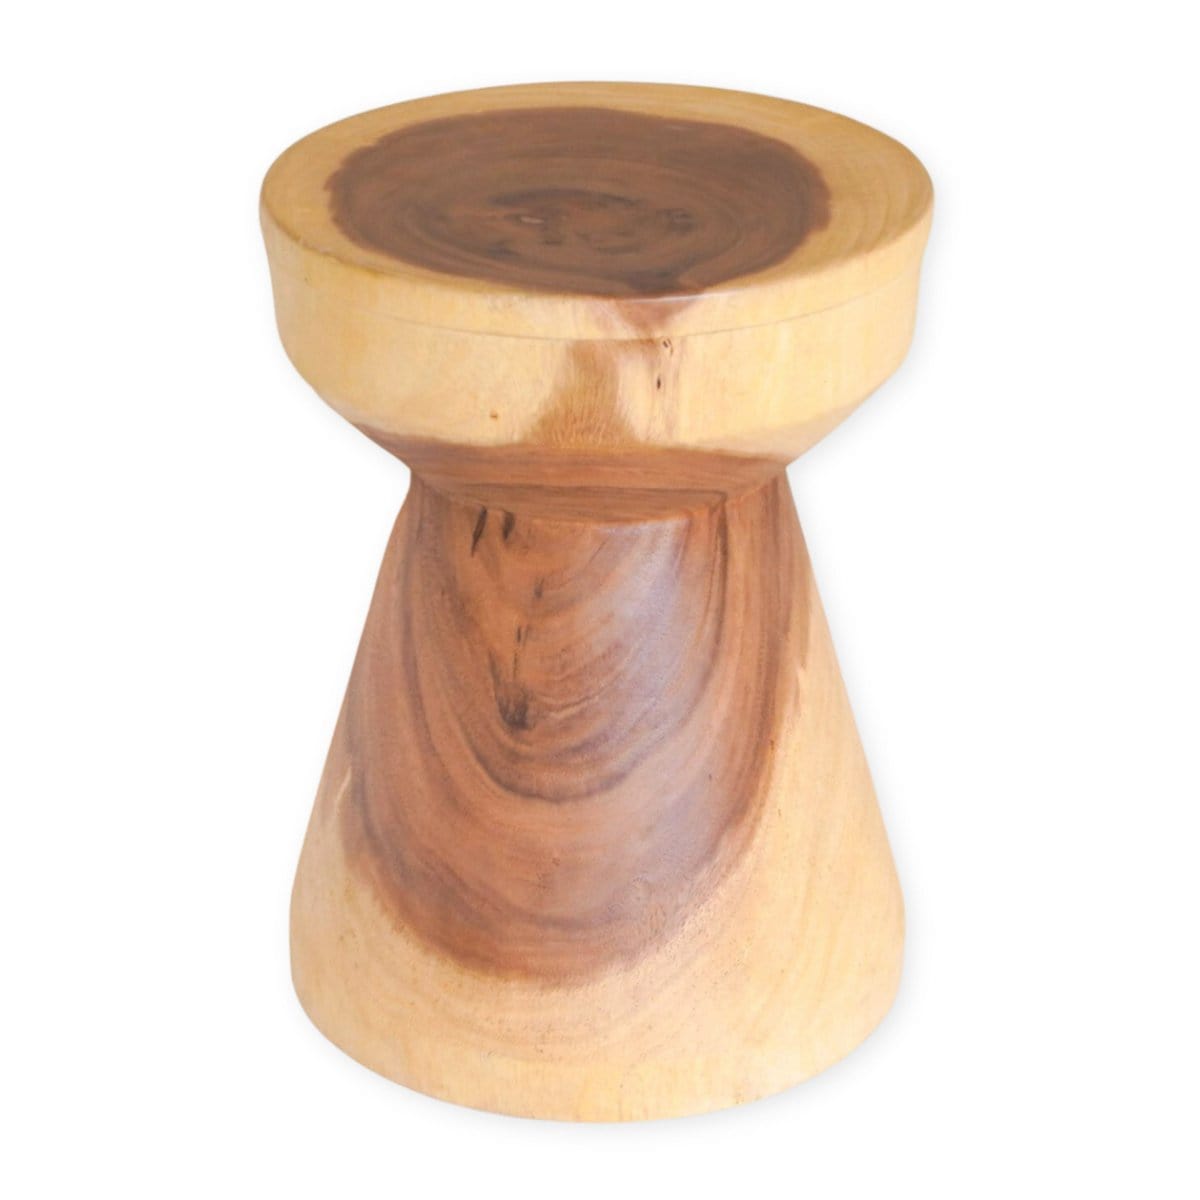 Soeji Massieve ronde houten bijzettafel Ø30 cm MANADO kleine tafel van regenboomhout met natuurlijke tweekleurige nerven